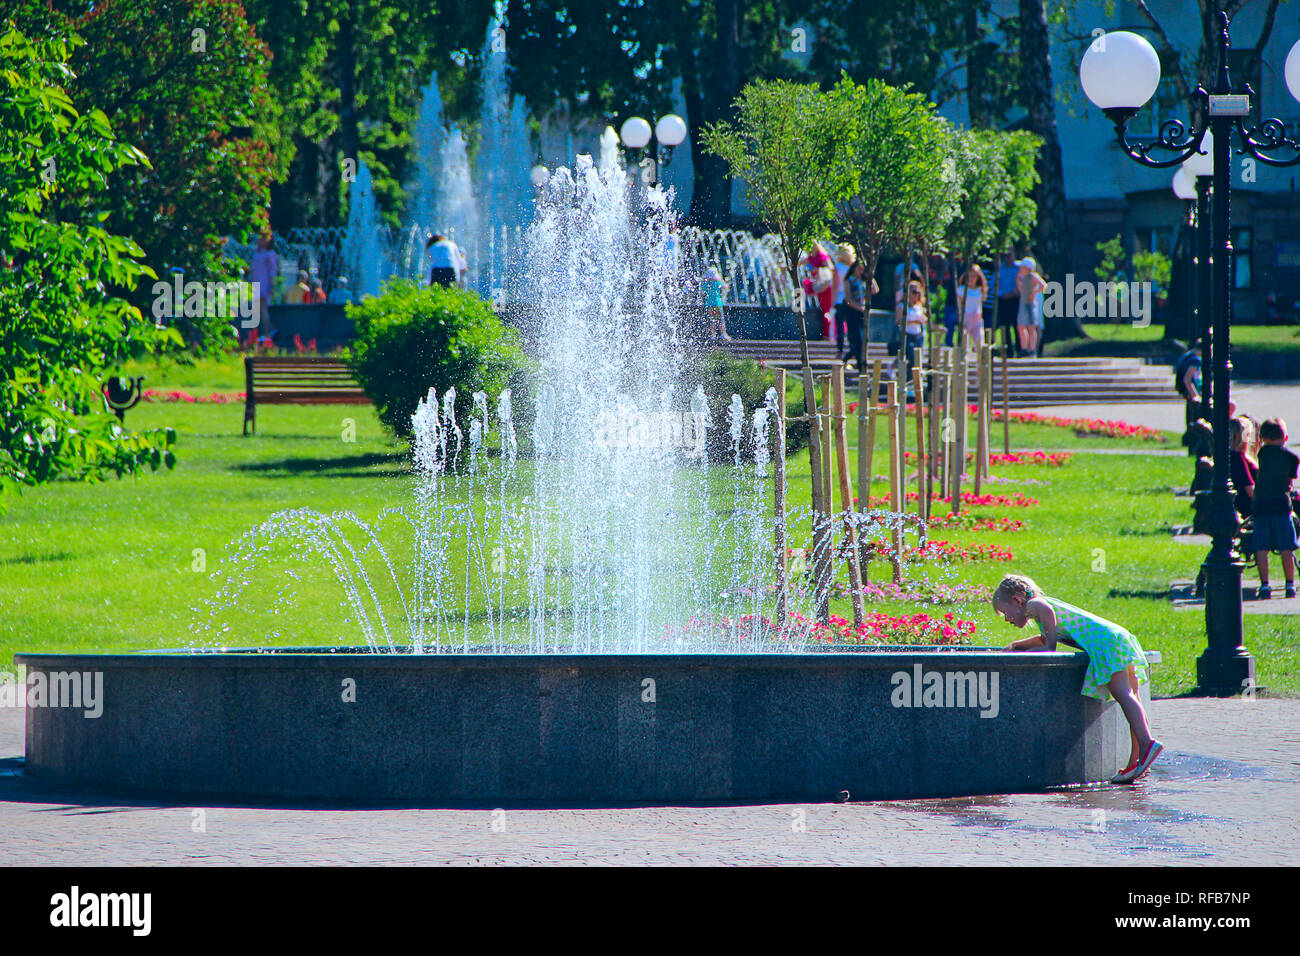 Bambina cercando di toccare acqua nella fontana della città. Le persone hanno un riposo nel parco cittadino con fontane. Soleggiata giornata estiva. Bambini che giocano con acqua di città Foto Stock